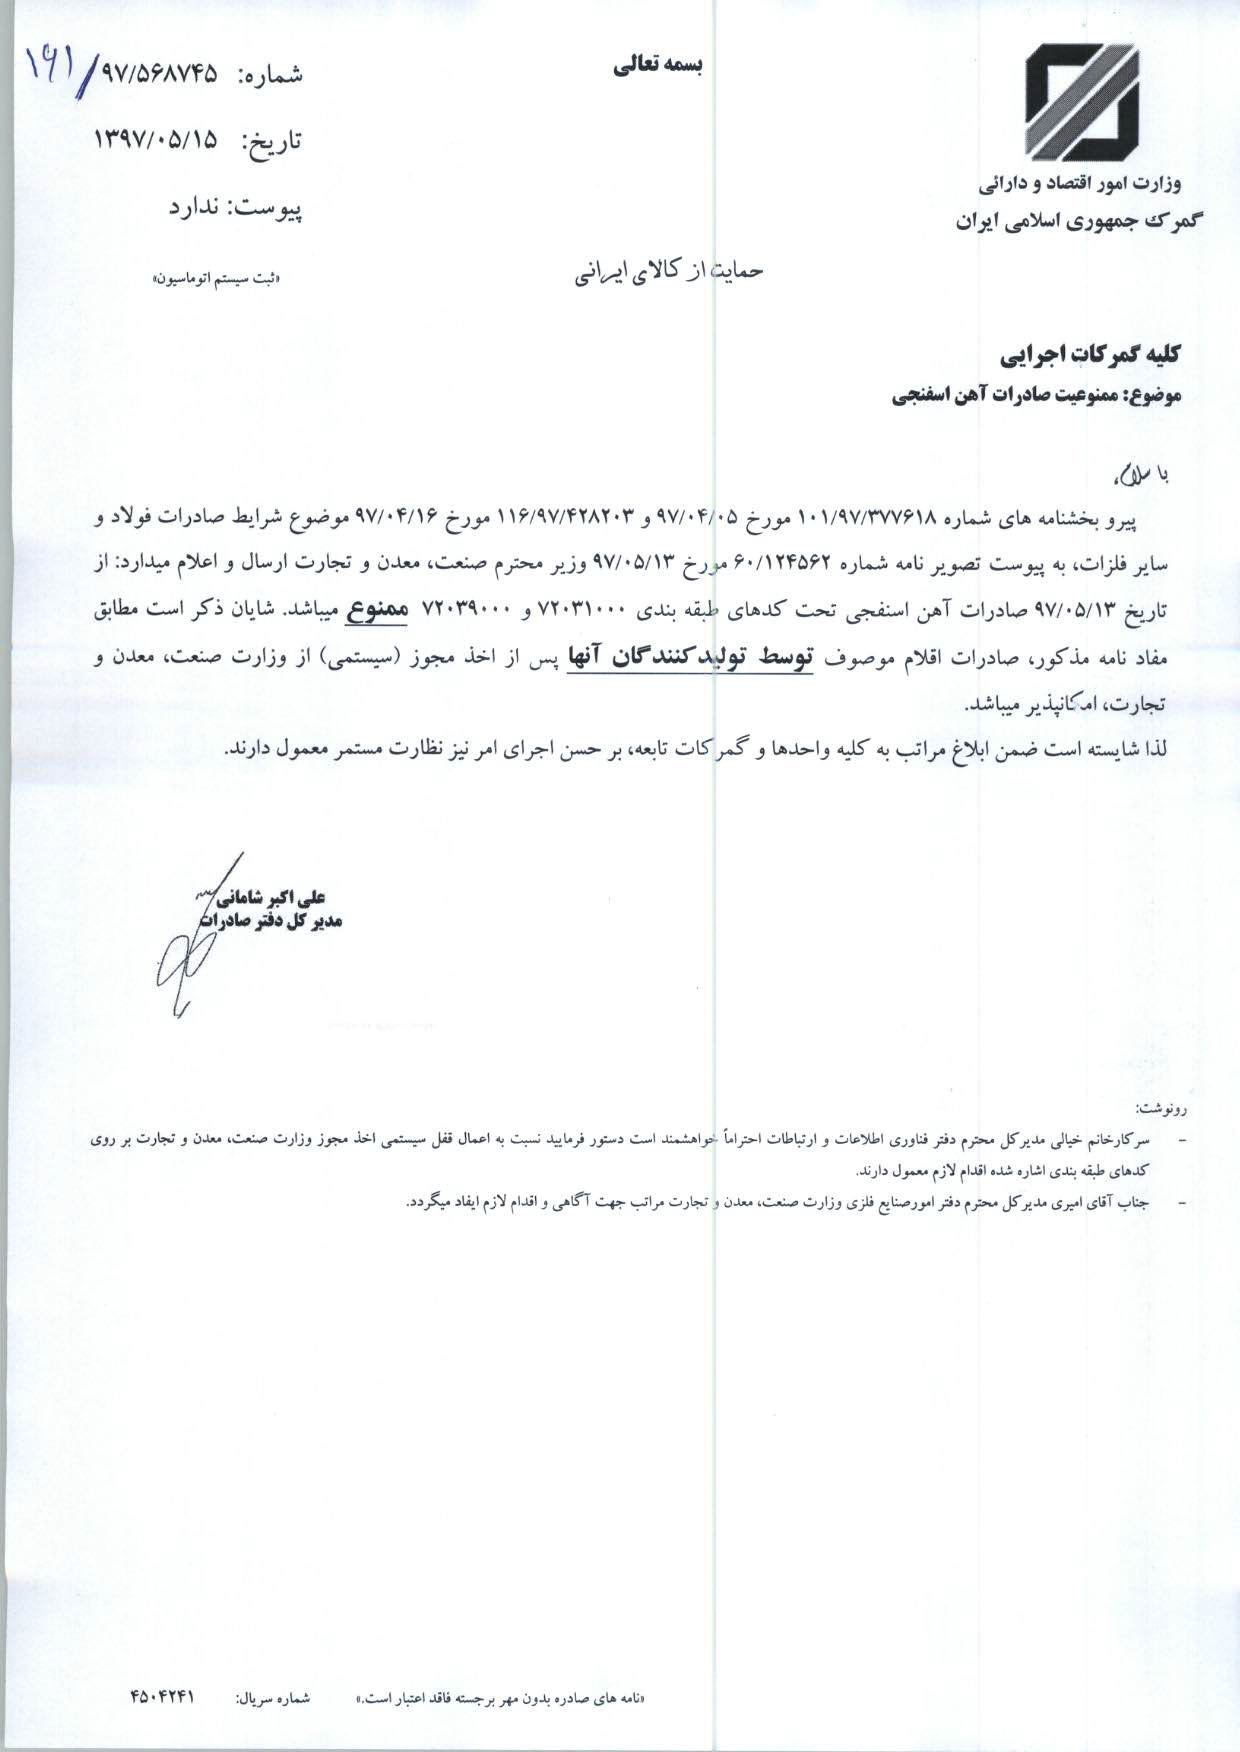 صادرات آهن اسفنجی منوط به اخذ مجوز از وزارت صنعت شد